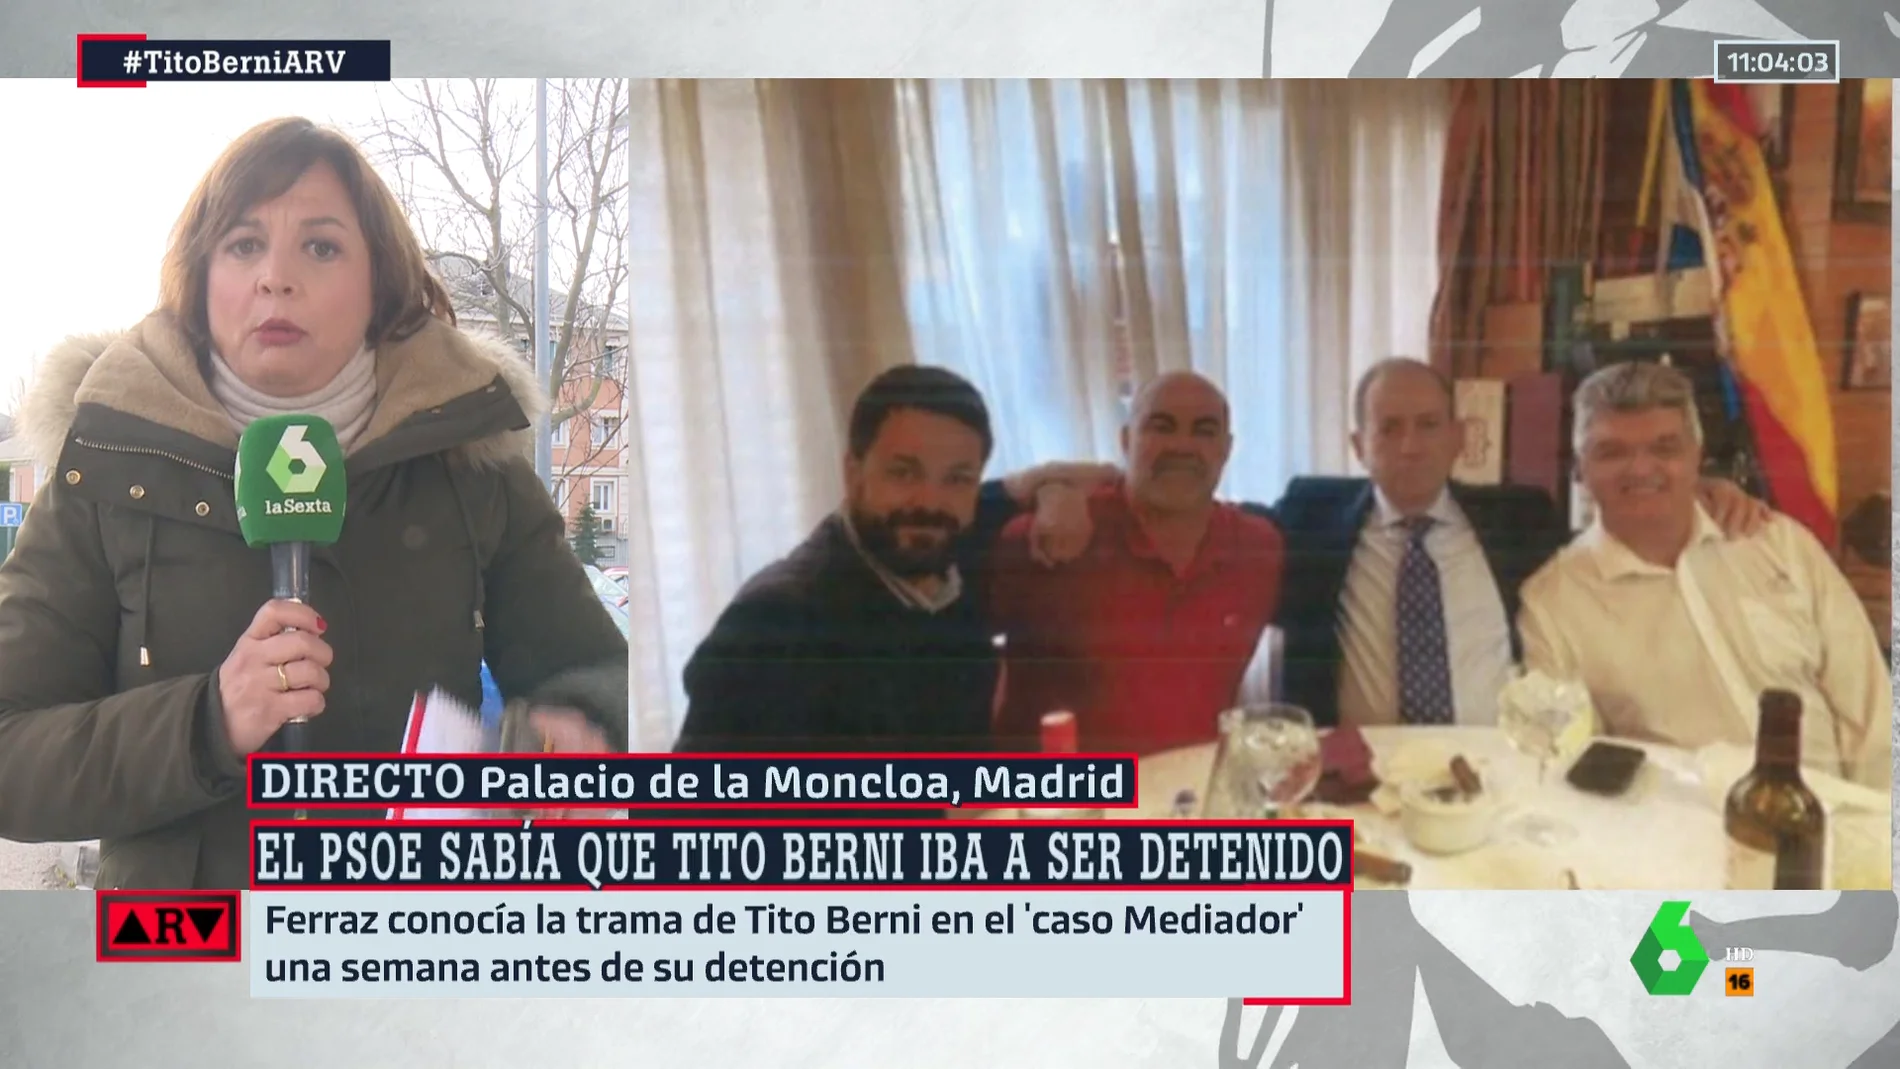 La tensa reunión con el exdiputado del PSOE Fuentes Curbelo para que dimitiera: "No sales de aquí hasta que renuncies"